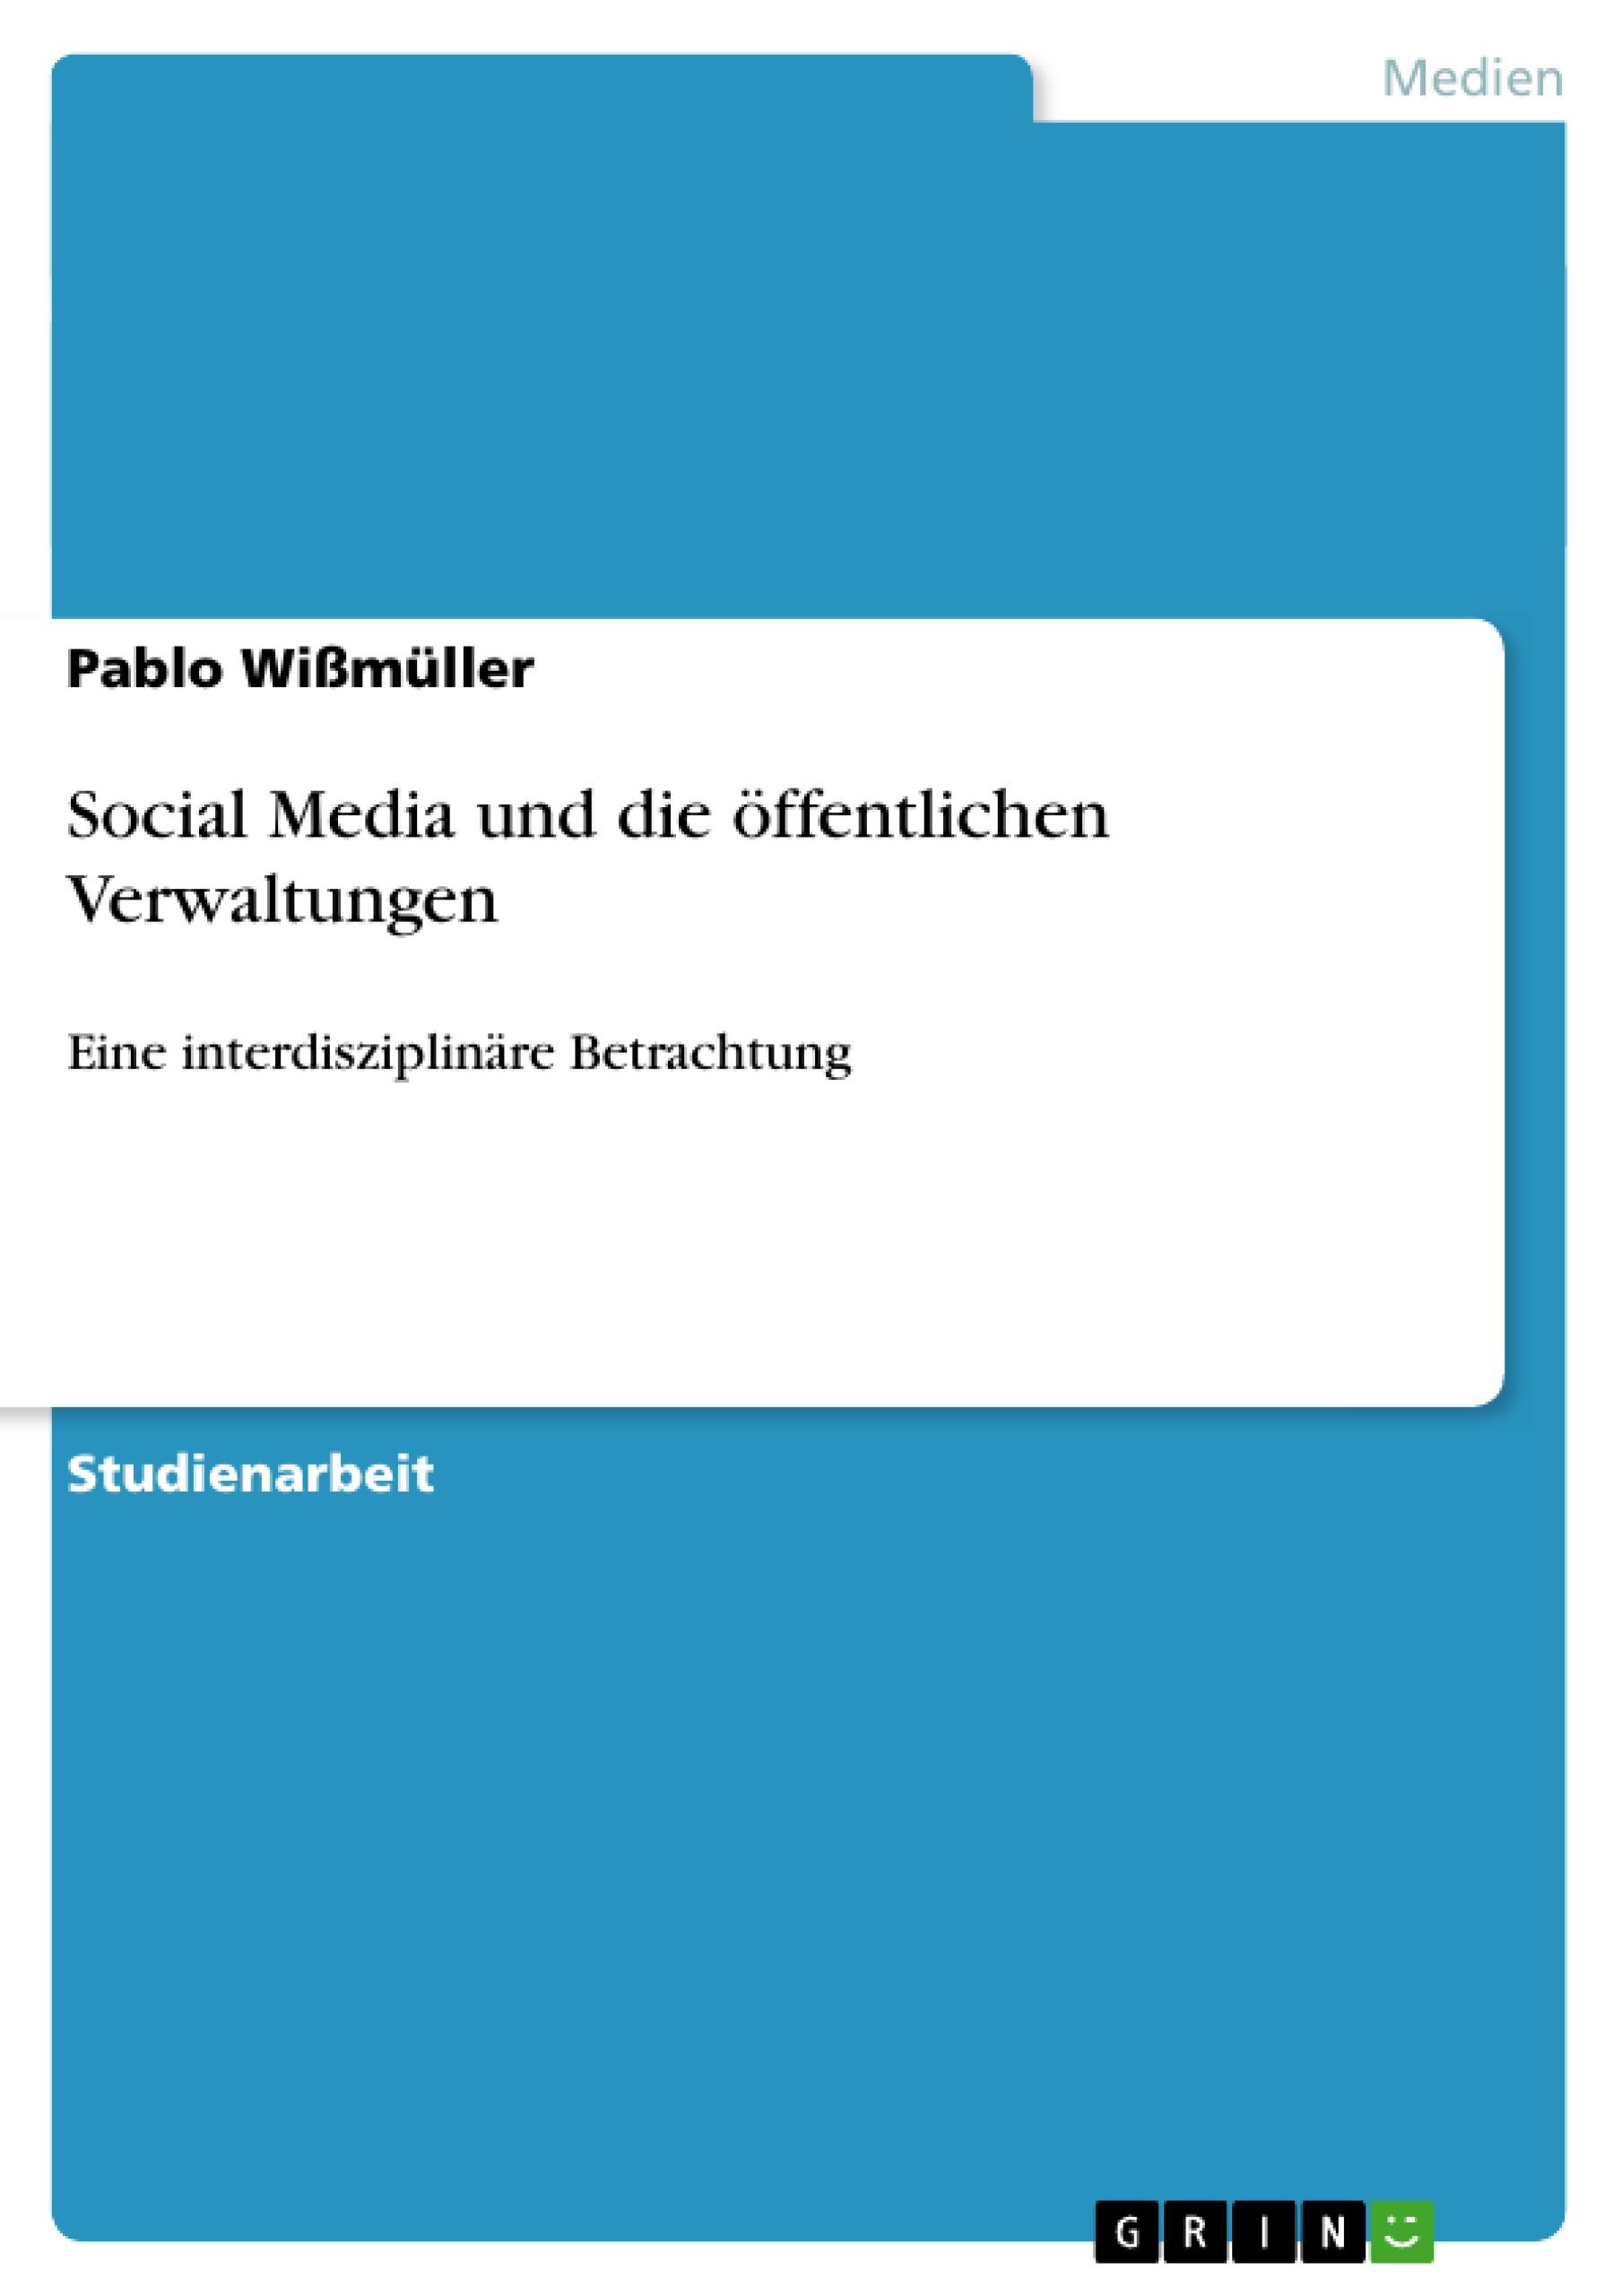 Social Media und die oeffentlichen Verwaltungen - Wissmueller, Pablo